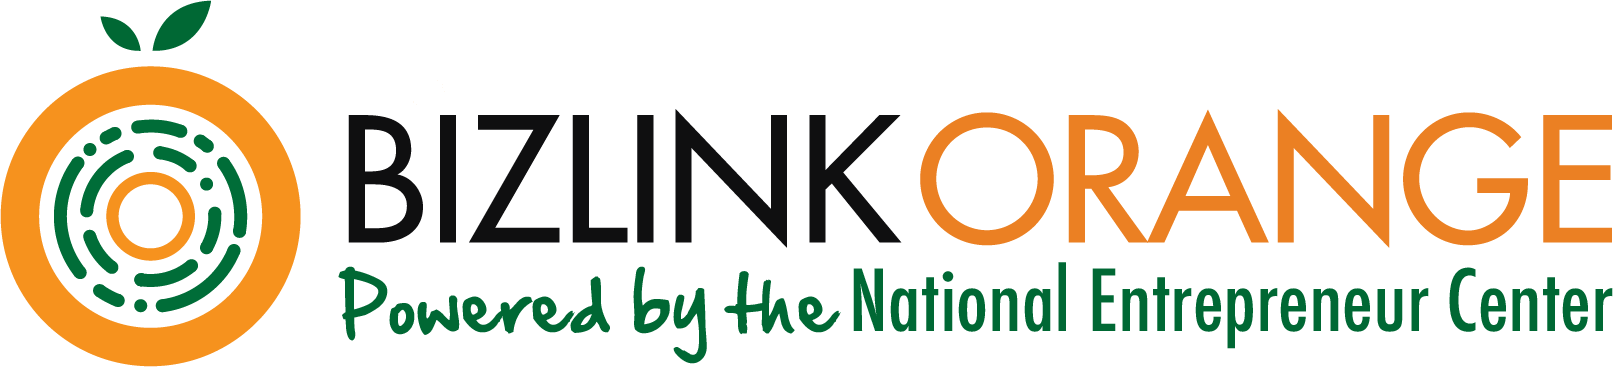 Logotipo - BizLink Orange - Desarrollado por el Centro Empresarial Nacional